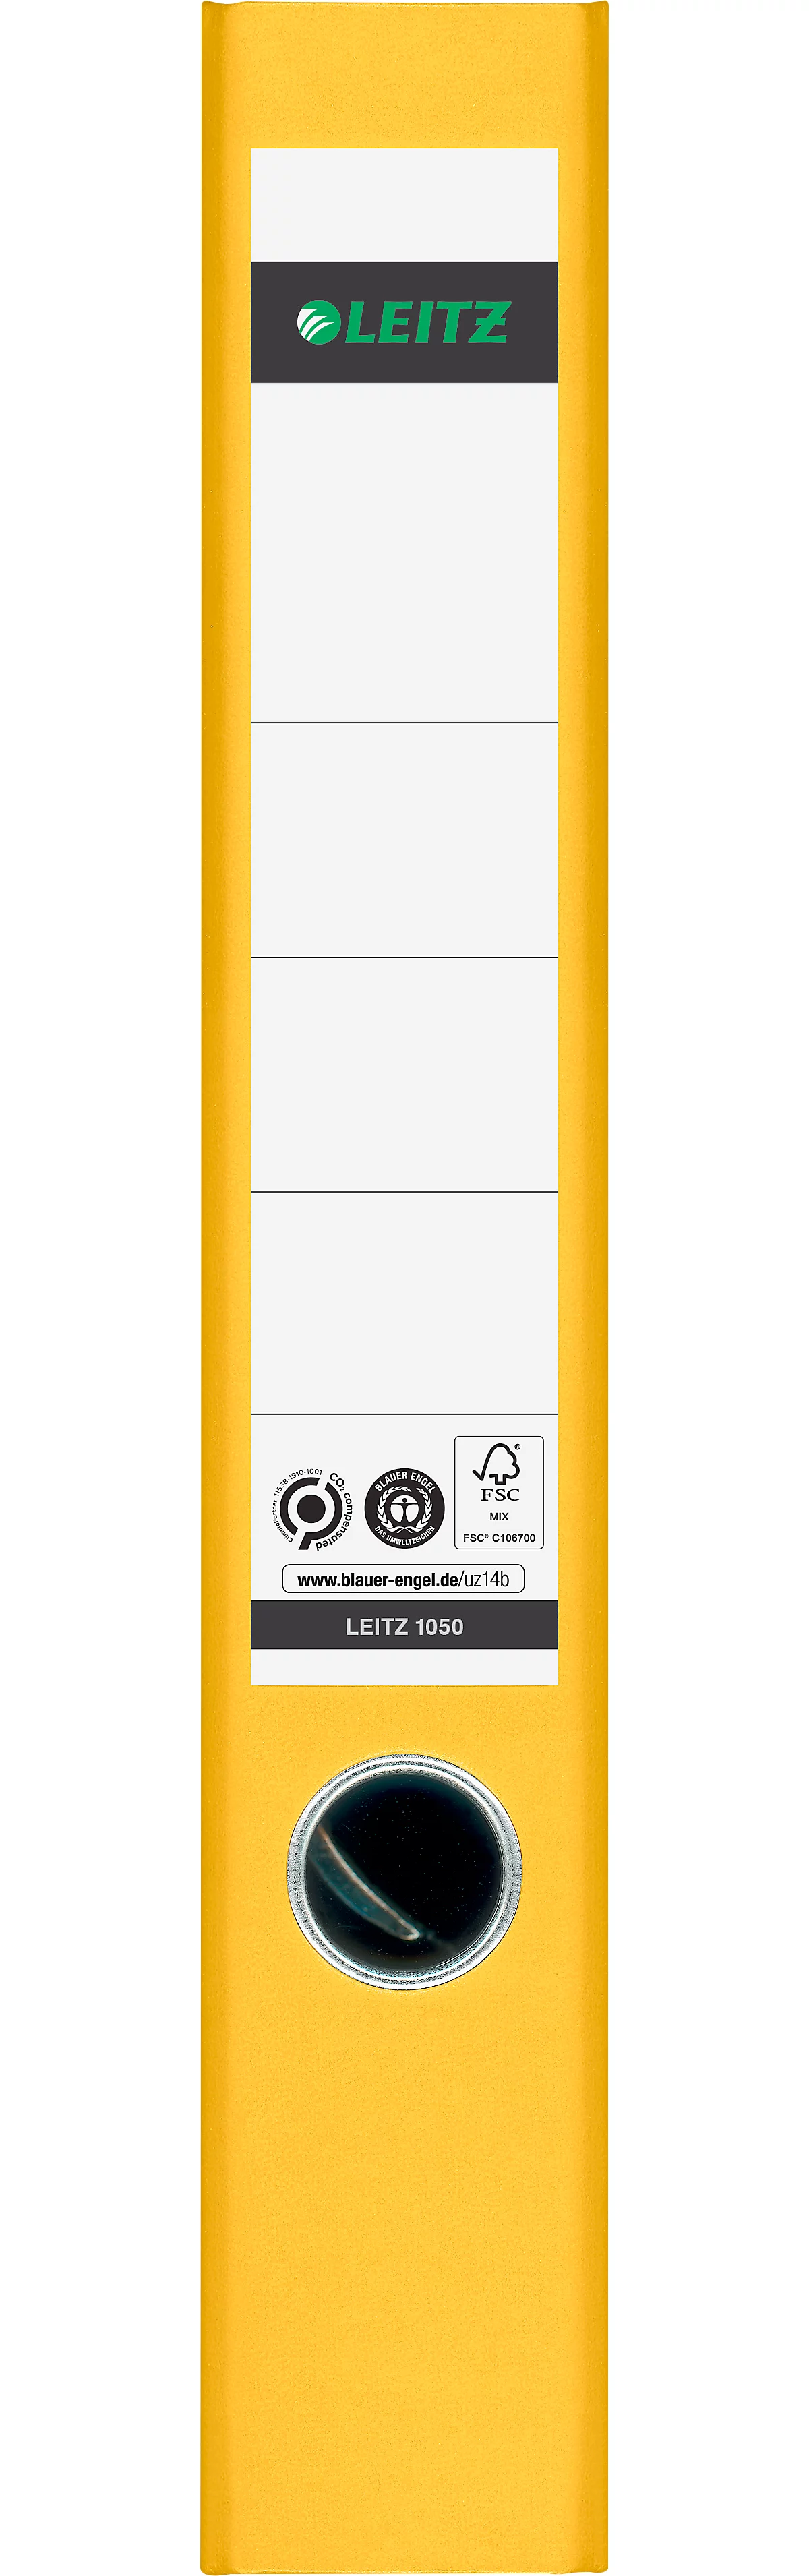 Carpeta LEITZ® 1050, DIN A4, ancho de lomo 52 mm, agujero para los dedos, etiqueta de lomo pegada, clima neutro, cartón duro, 1 unidad, amarillo